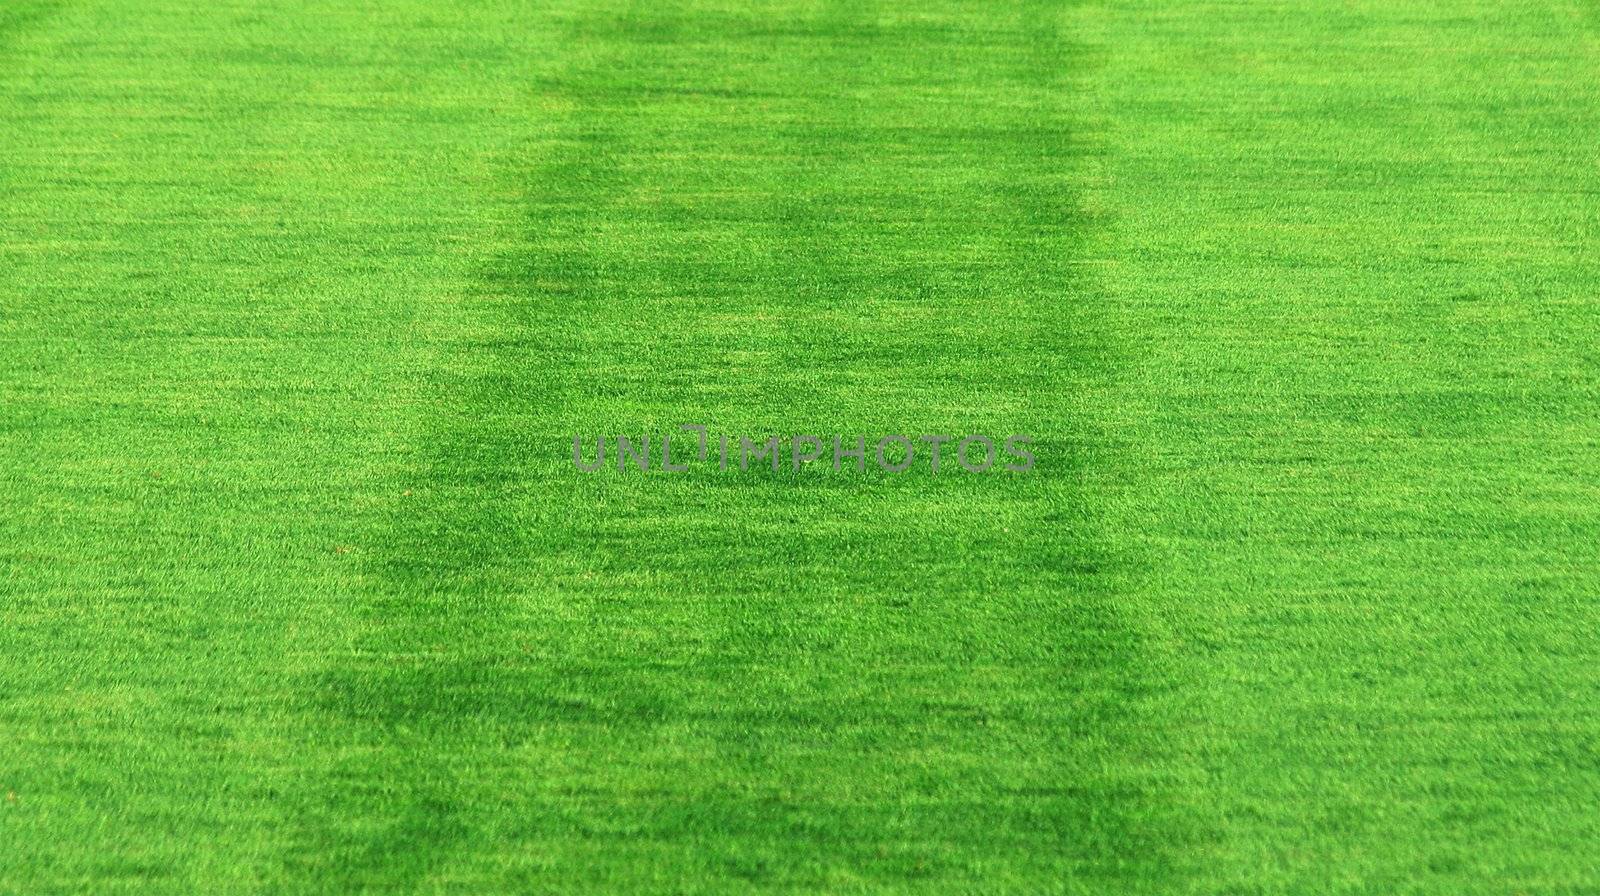 grass background by ozaiachin